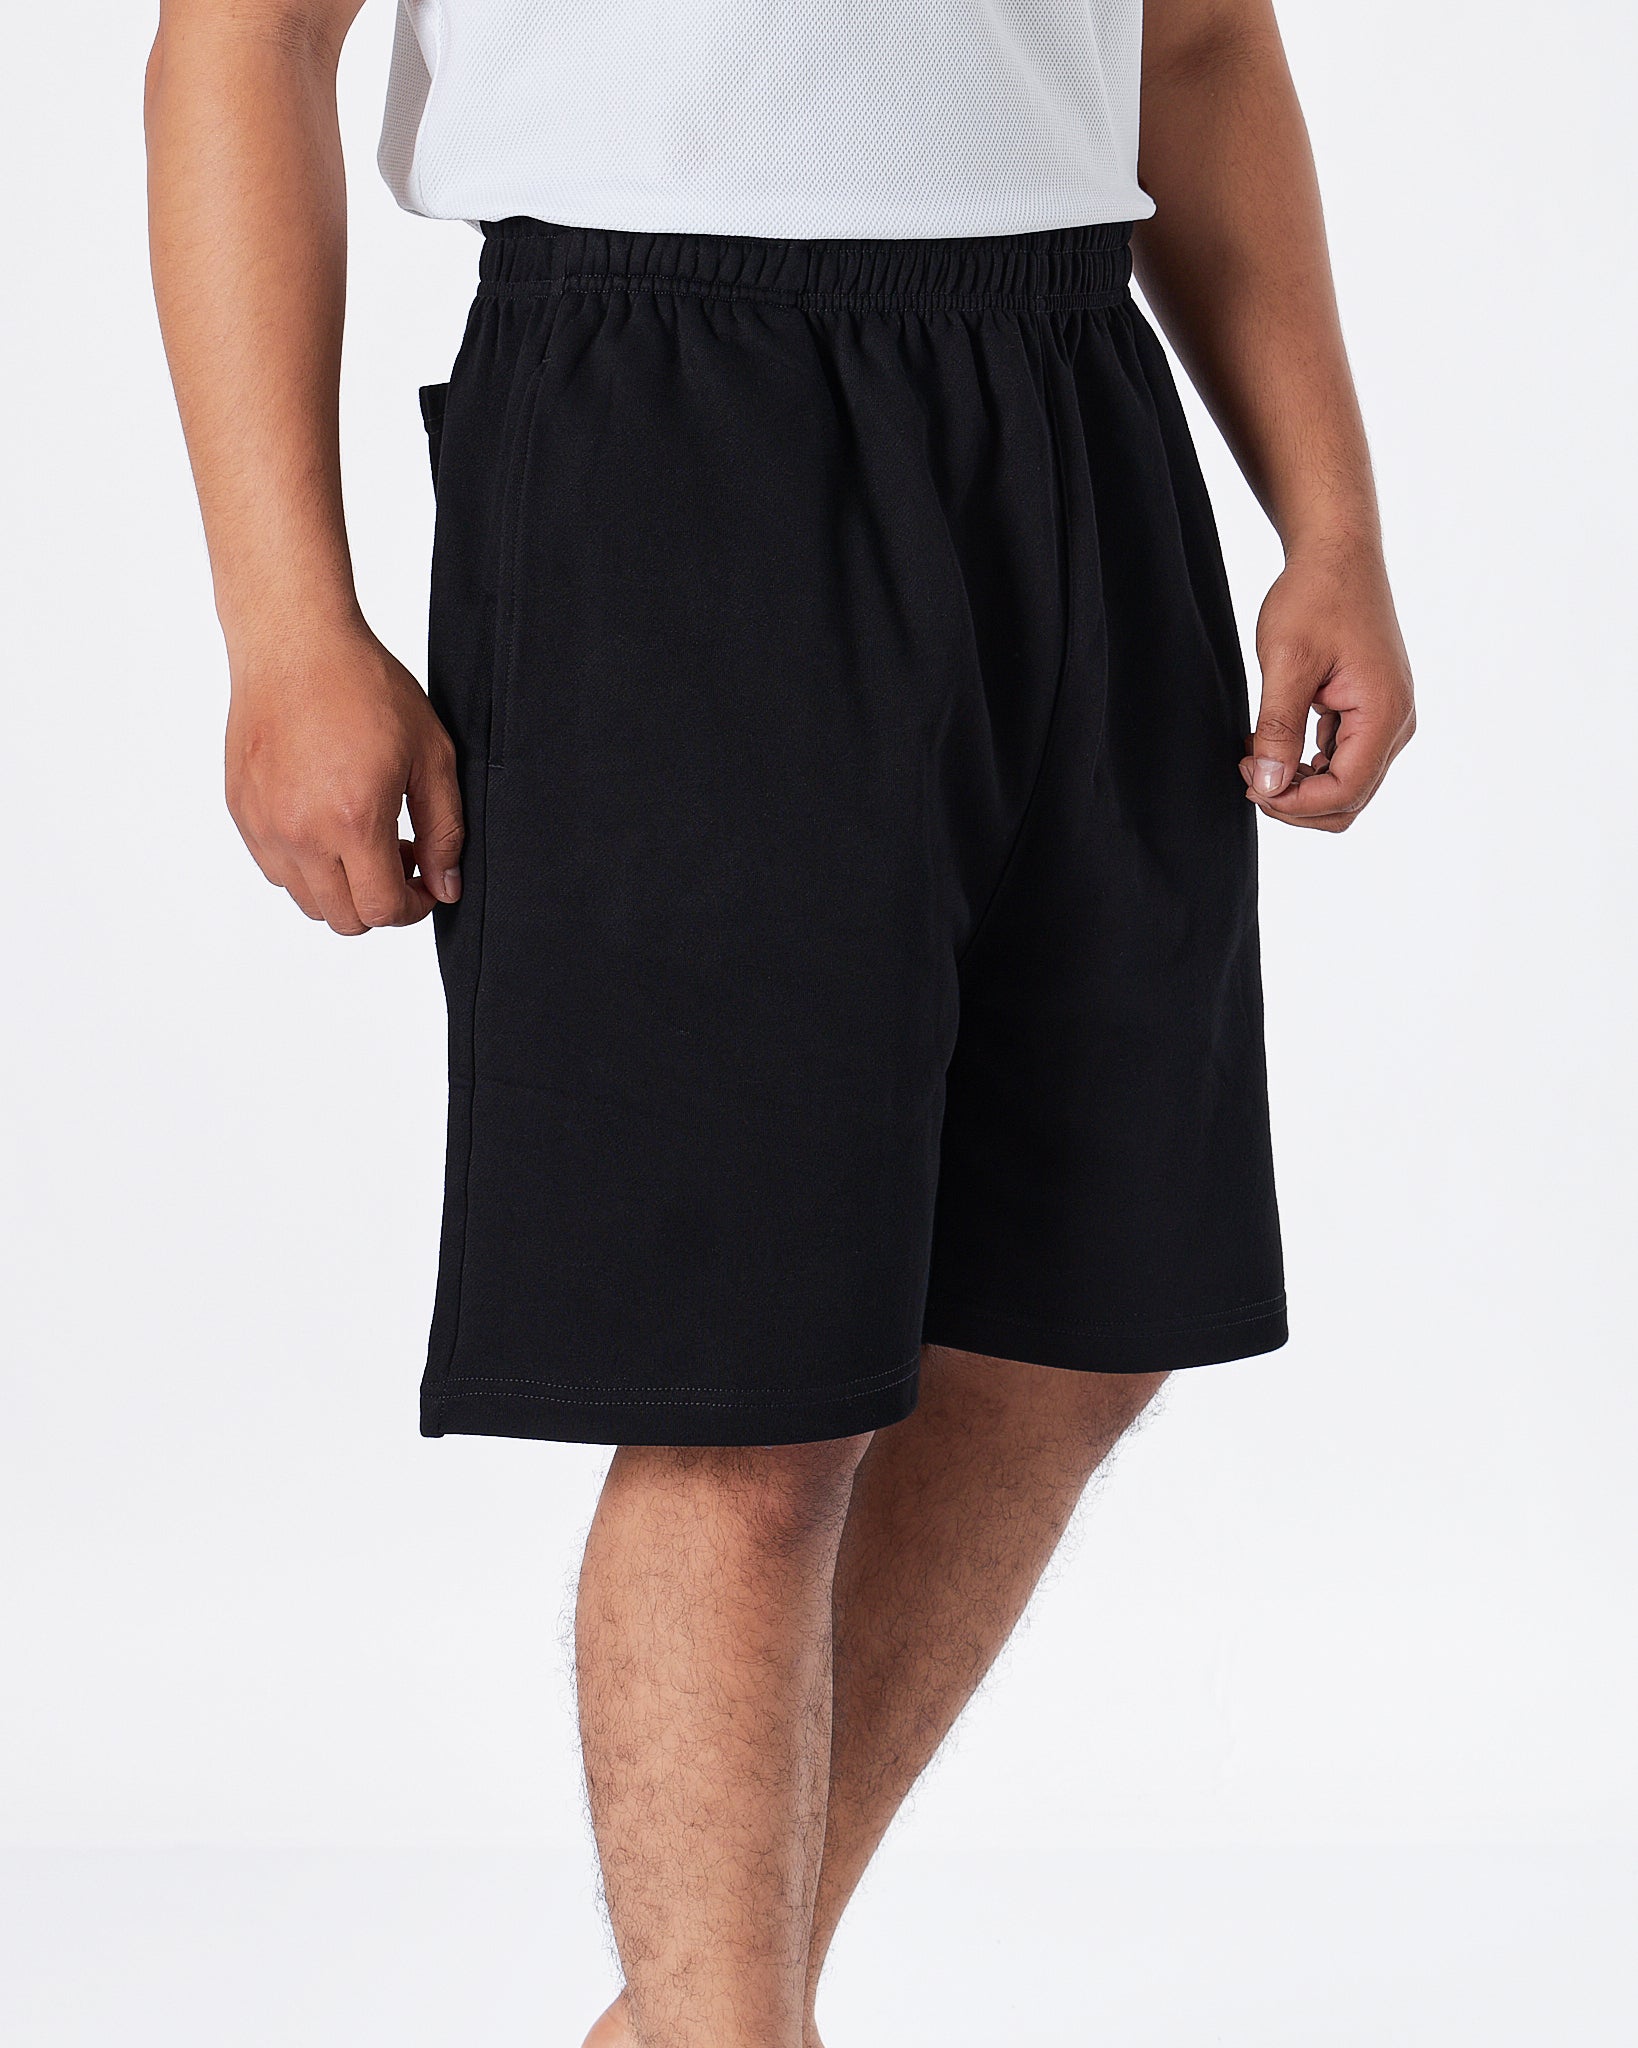 MOI OUTFIT-DRE Men Black Shorts 22.90